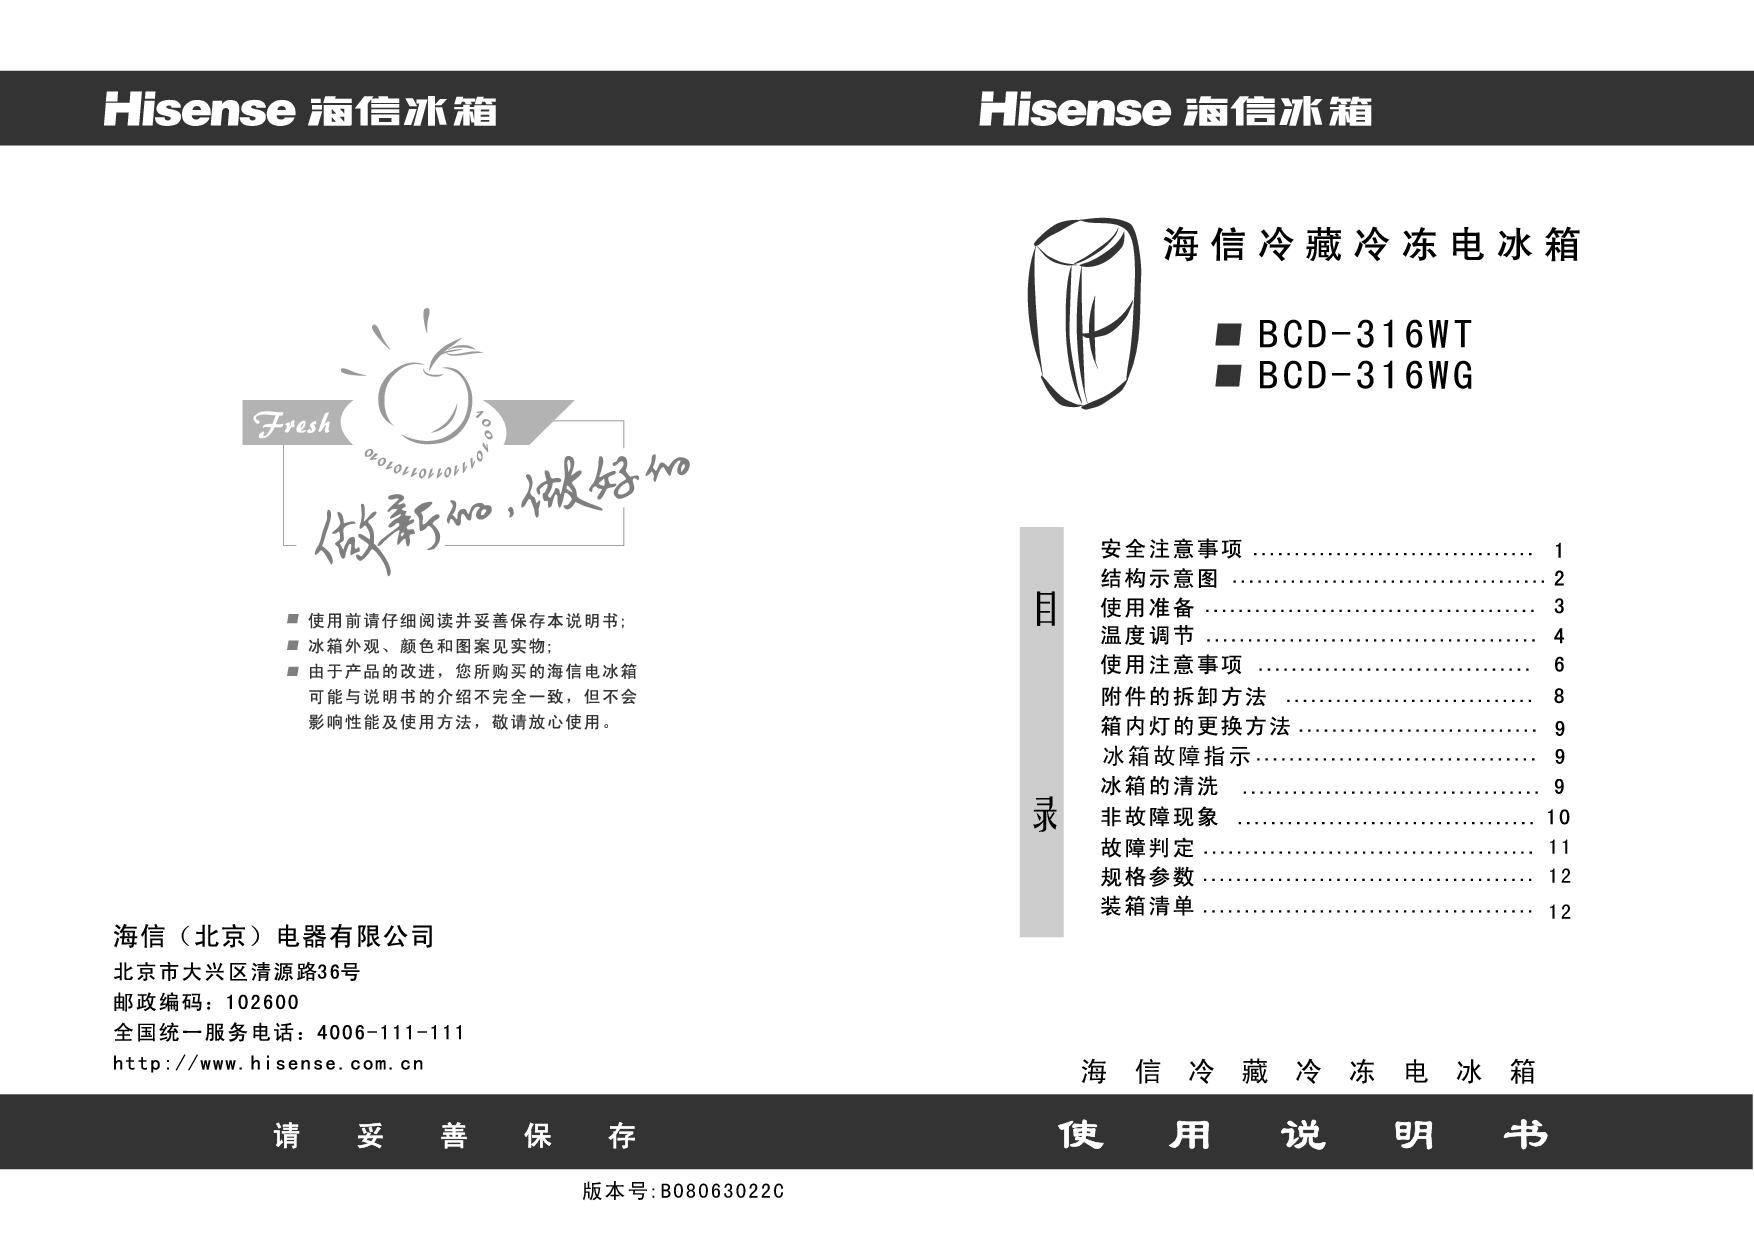 海信 Hisense BCD-316WG 使用说明书 封面